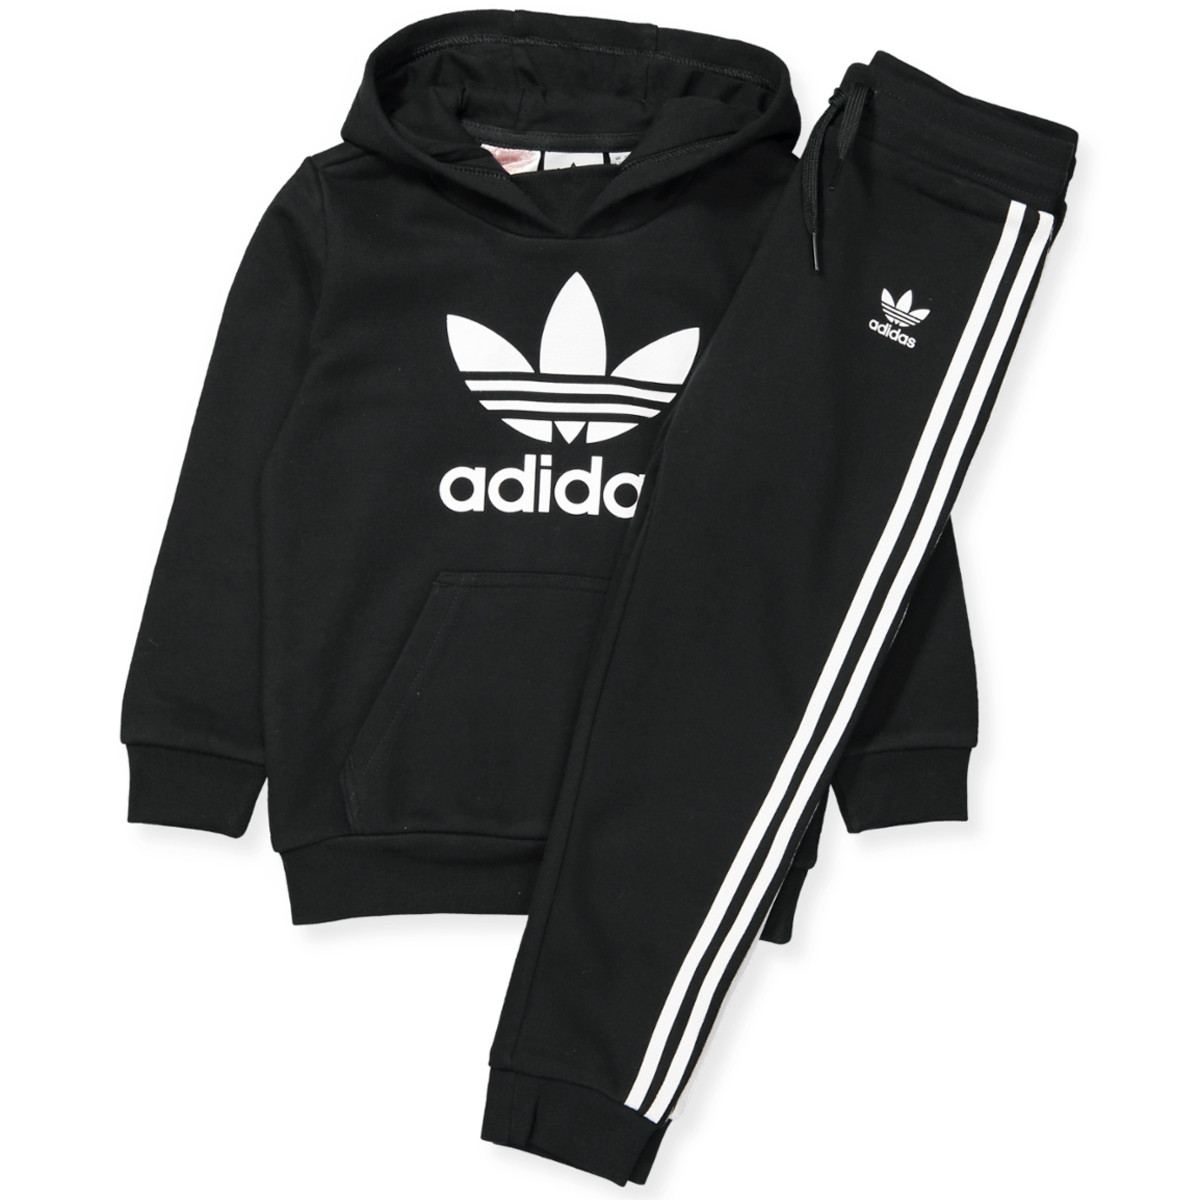 Adidas Originals - Black sweatsuit - BLACK/WHITE